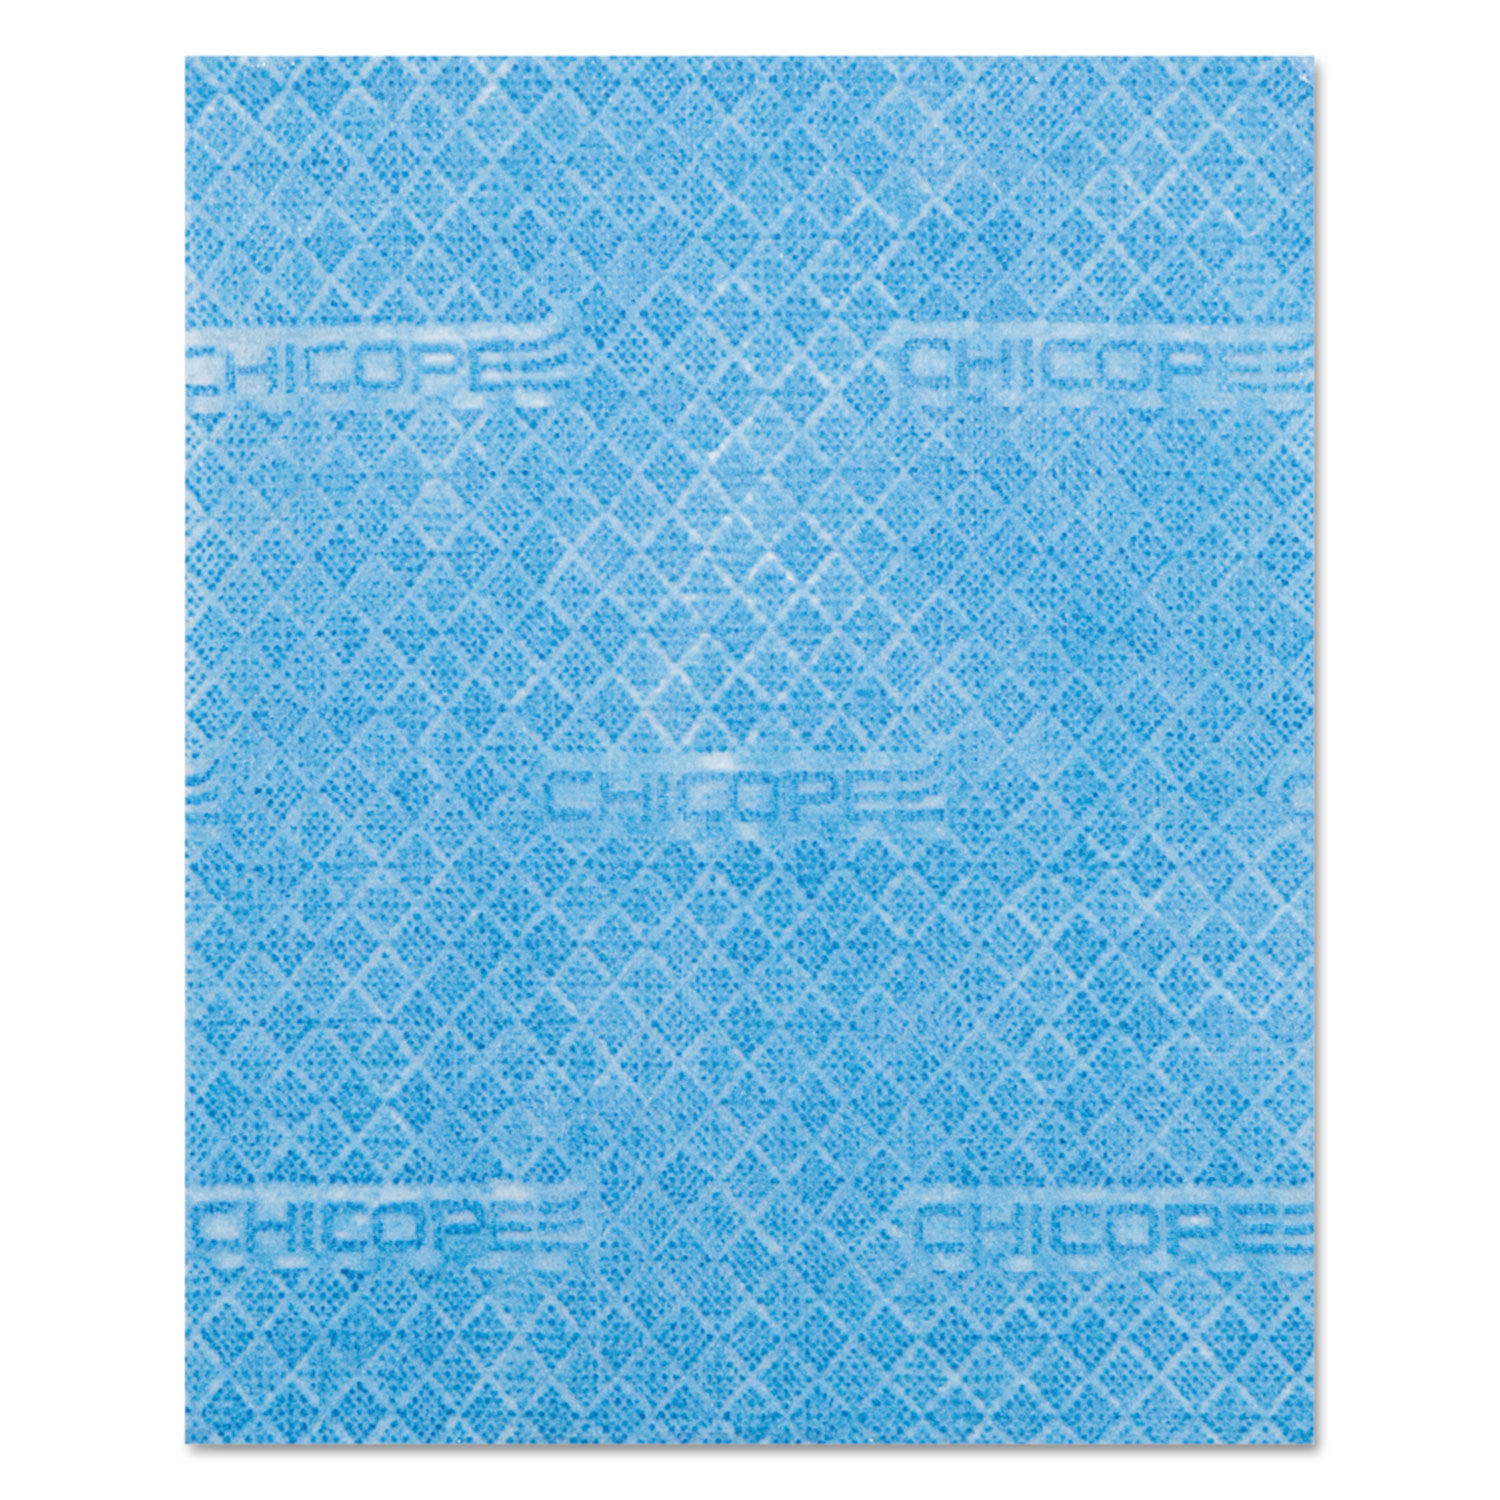 Durawipe Medium-Duty Industrial Wipers, 13.1 x 12.6, Blue, 910/Roll